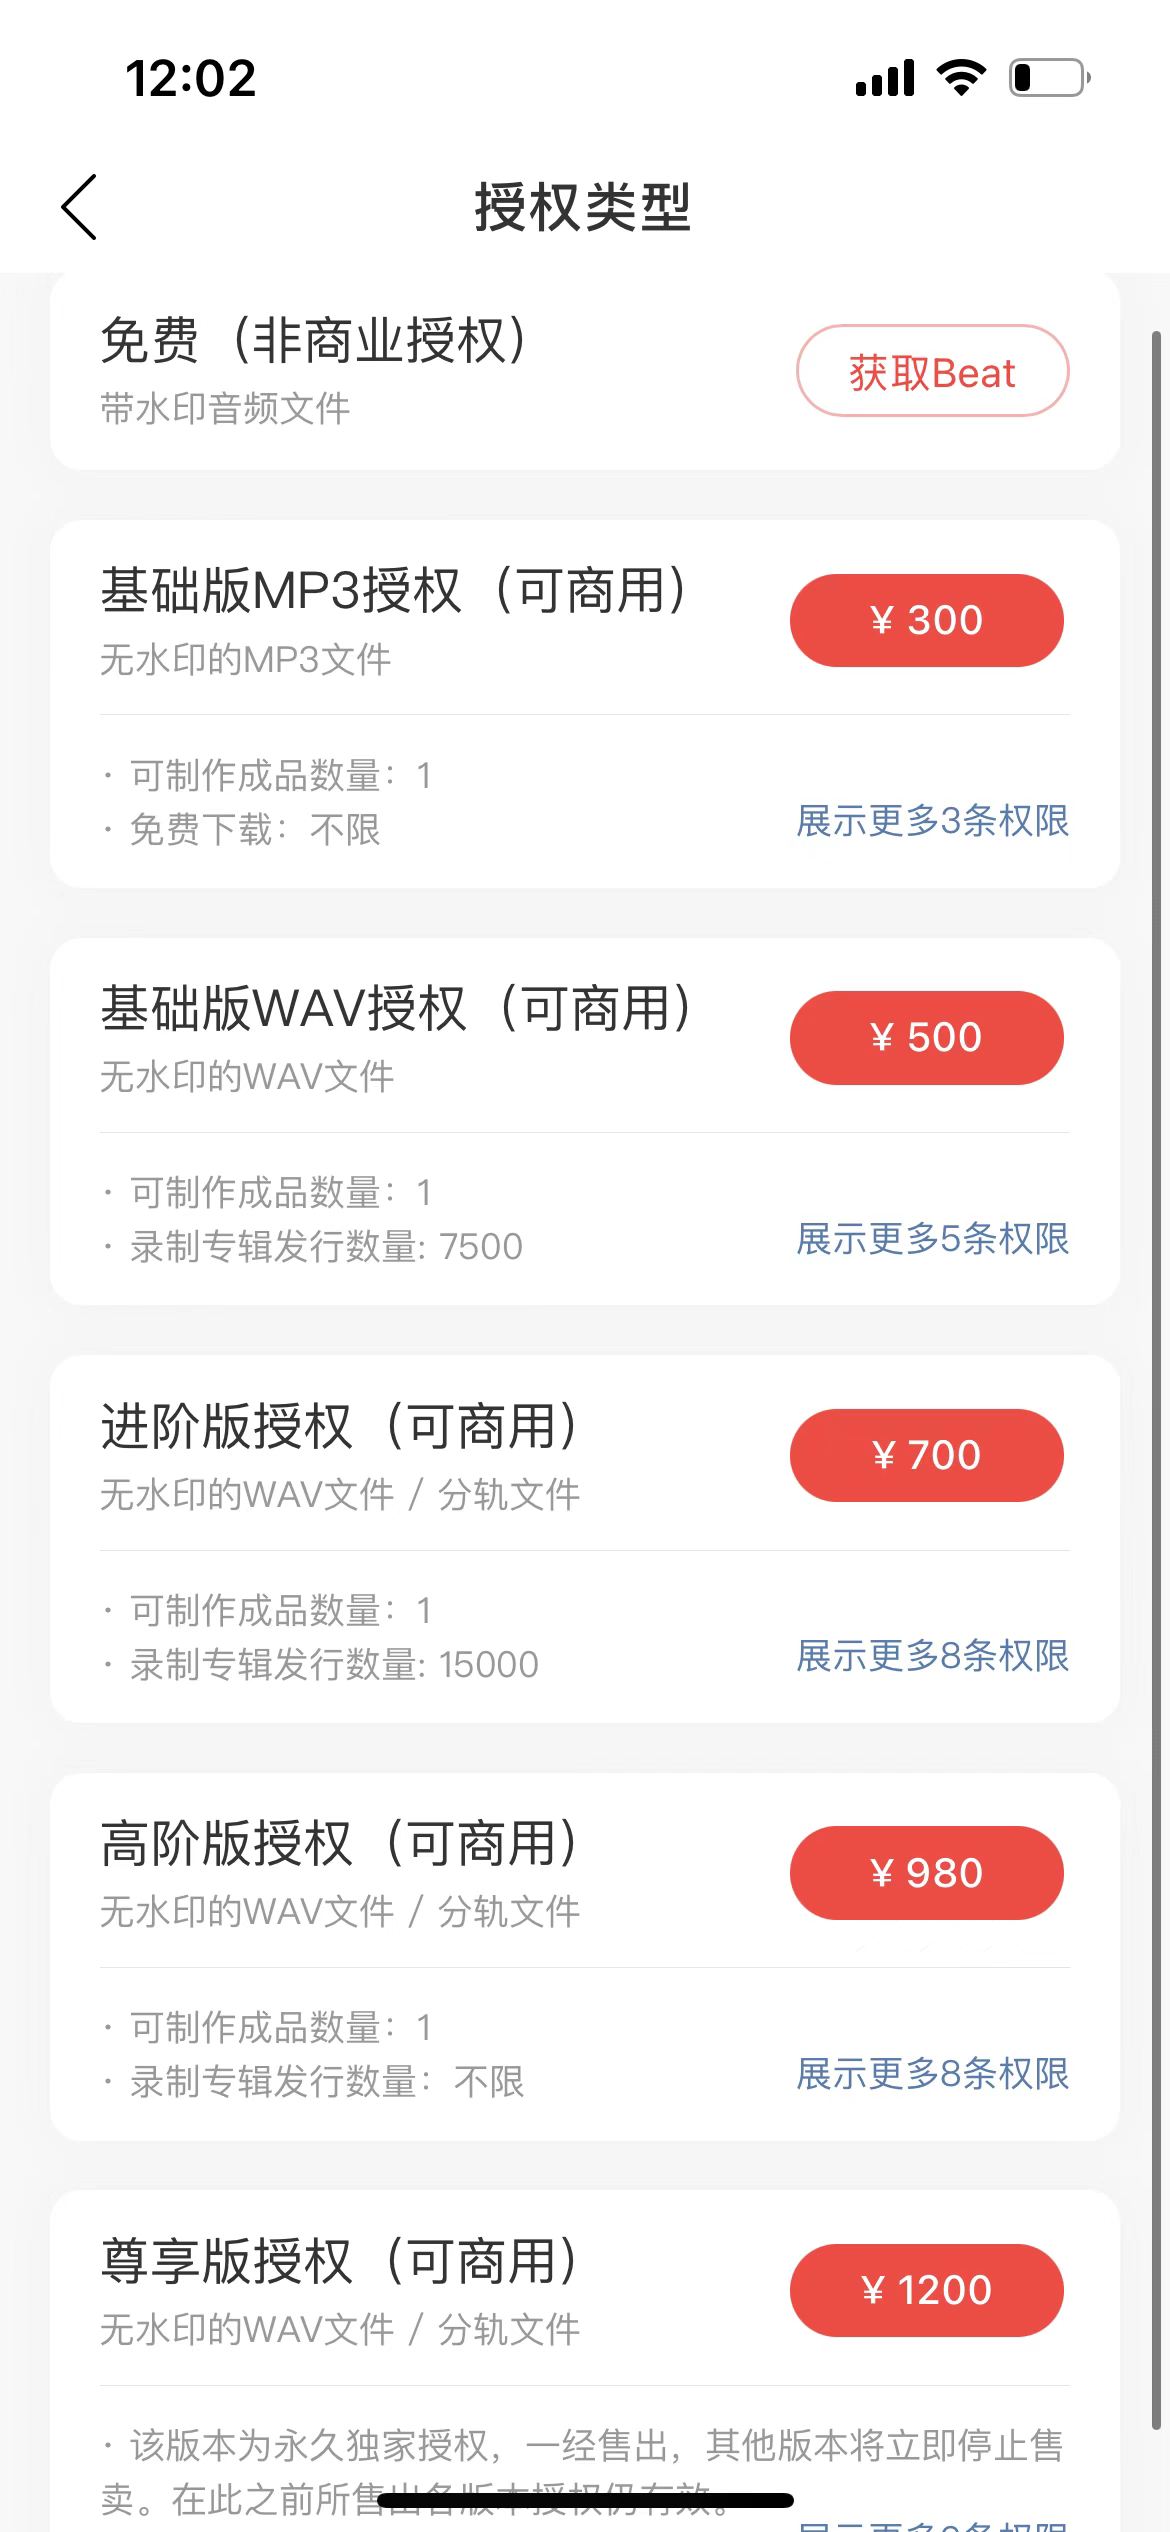 网易云音乐上线Beat交易平台激灵，有授权卖到59999元